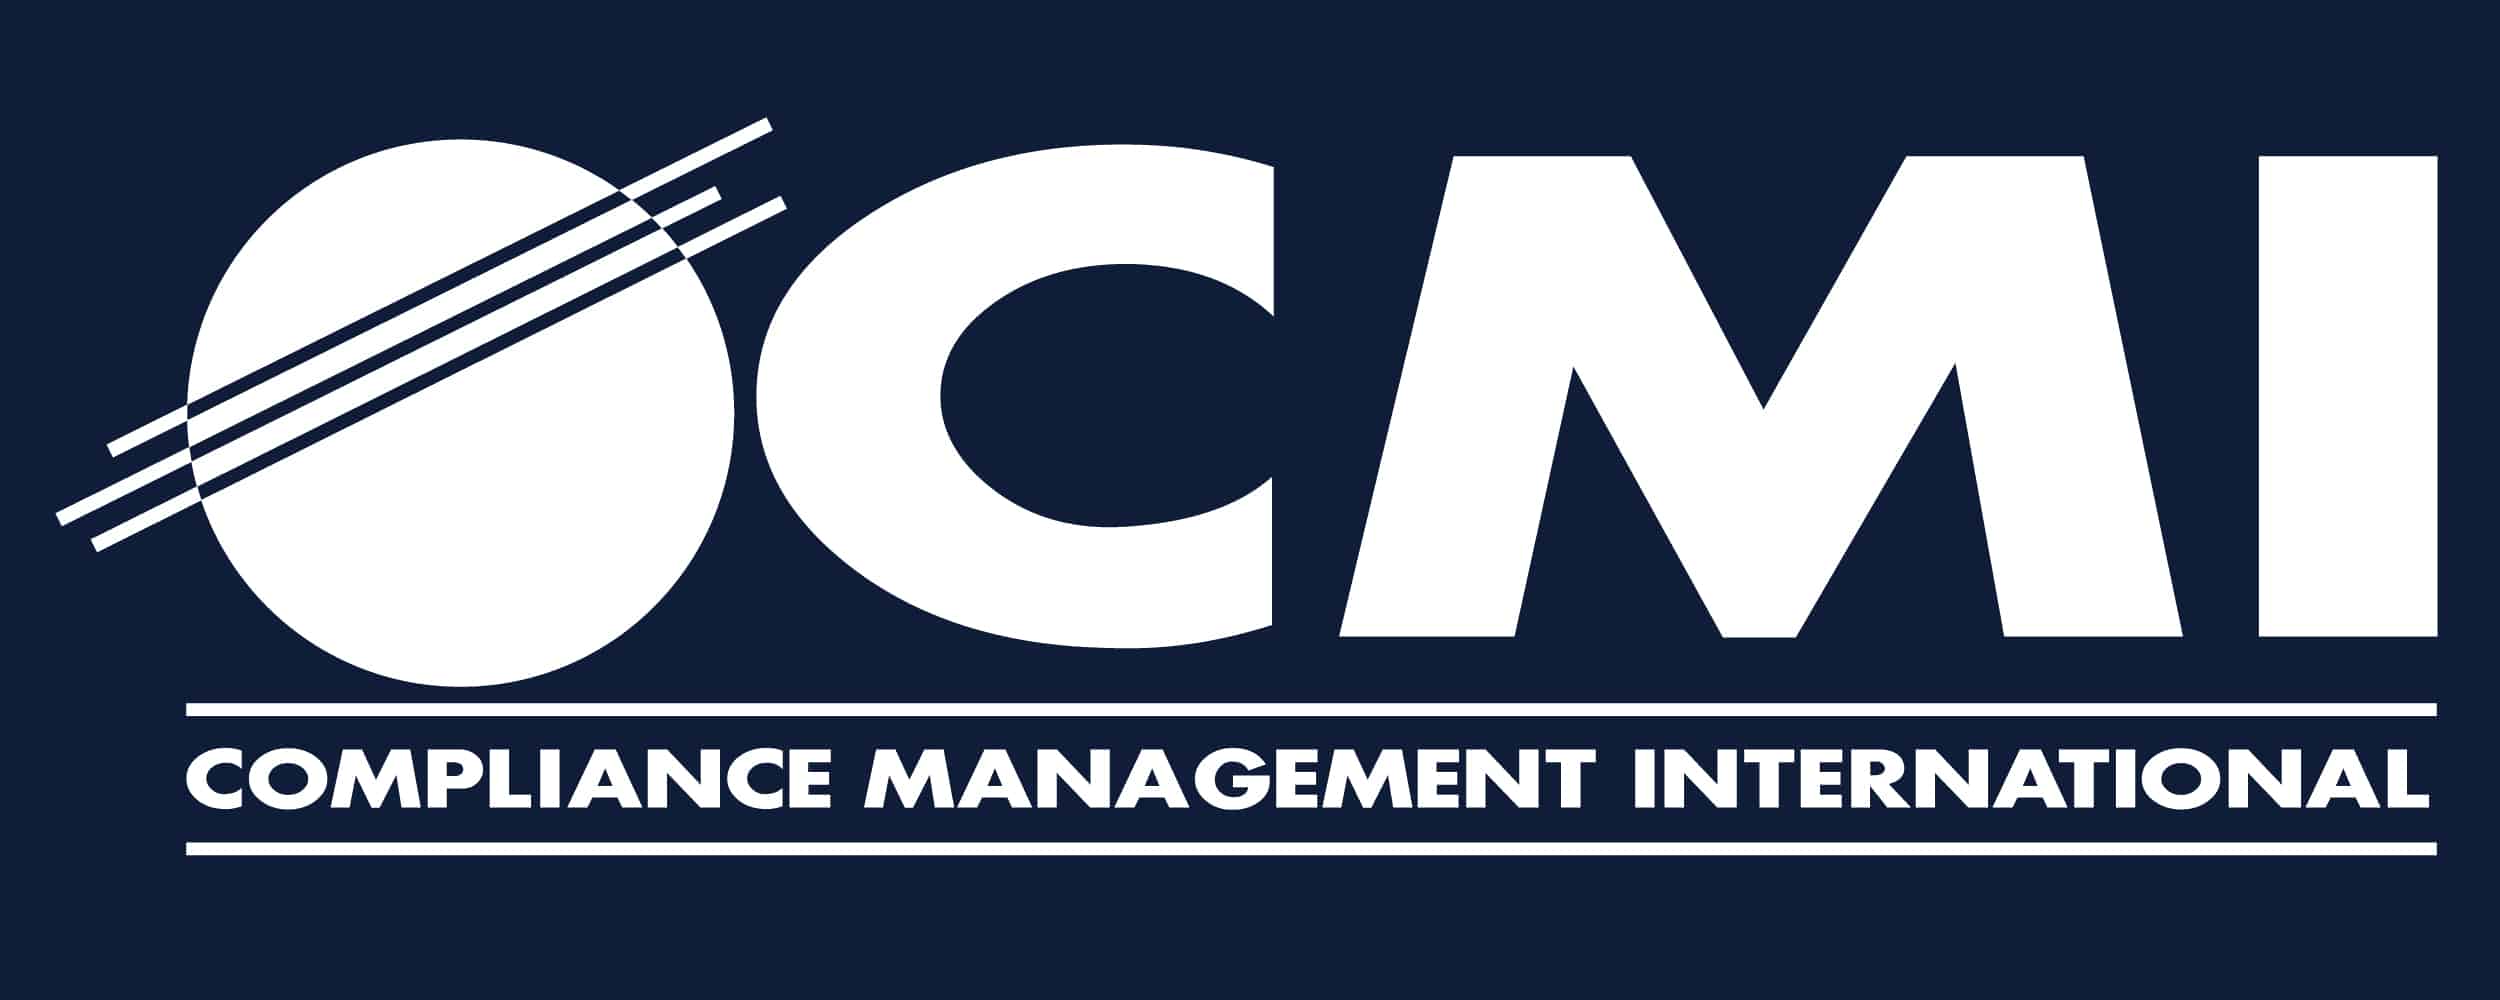 Compliance Management International